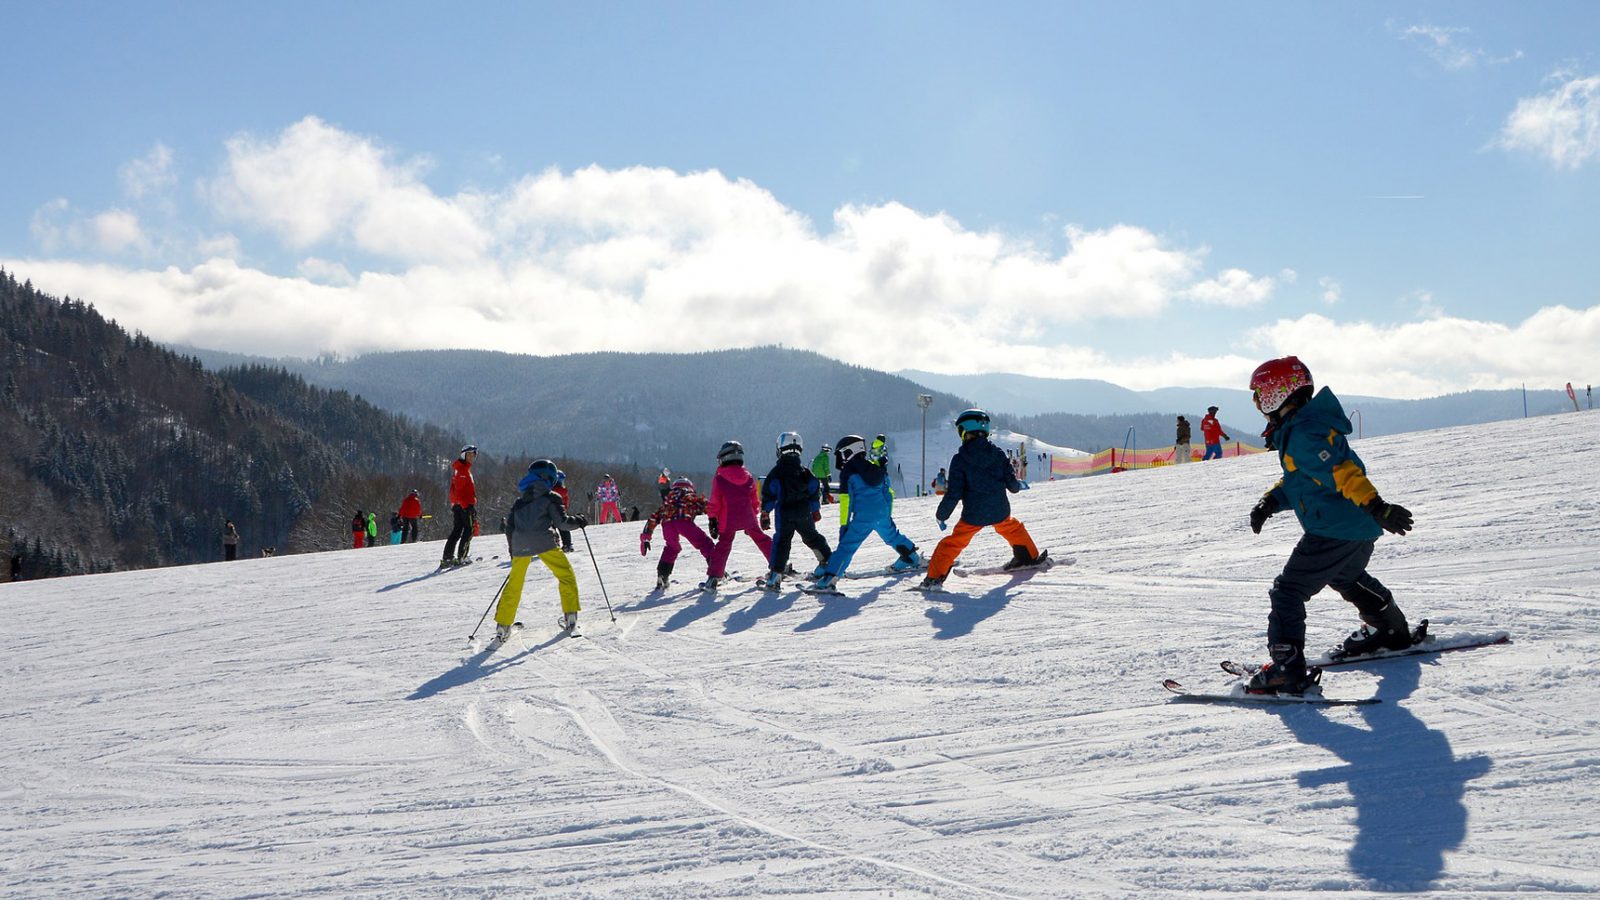 Morzine Children Skiing Class Learning